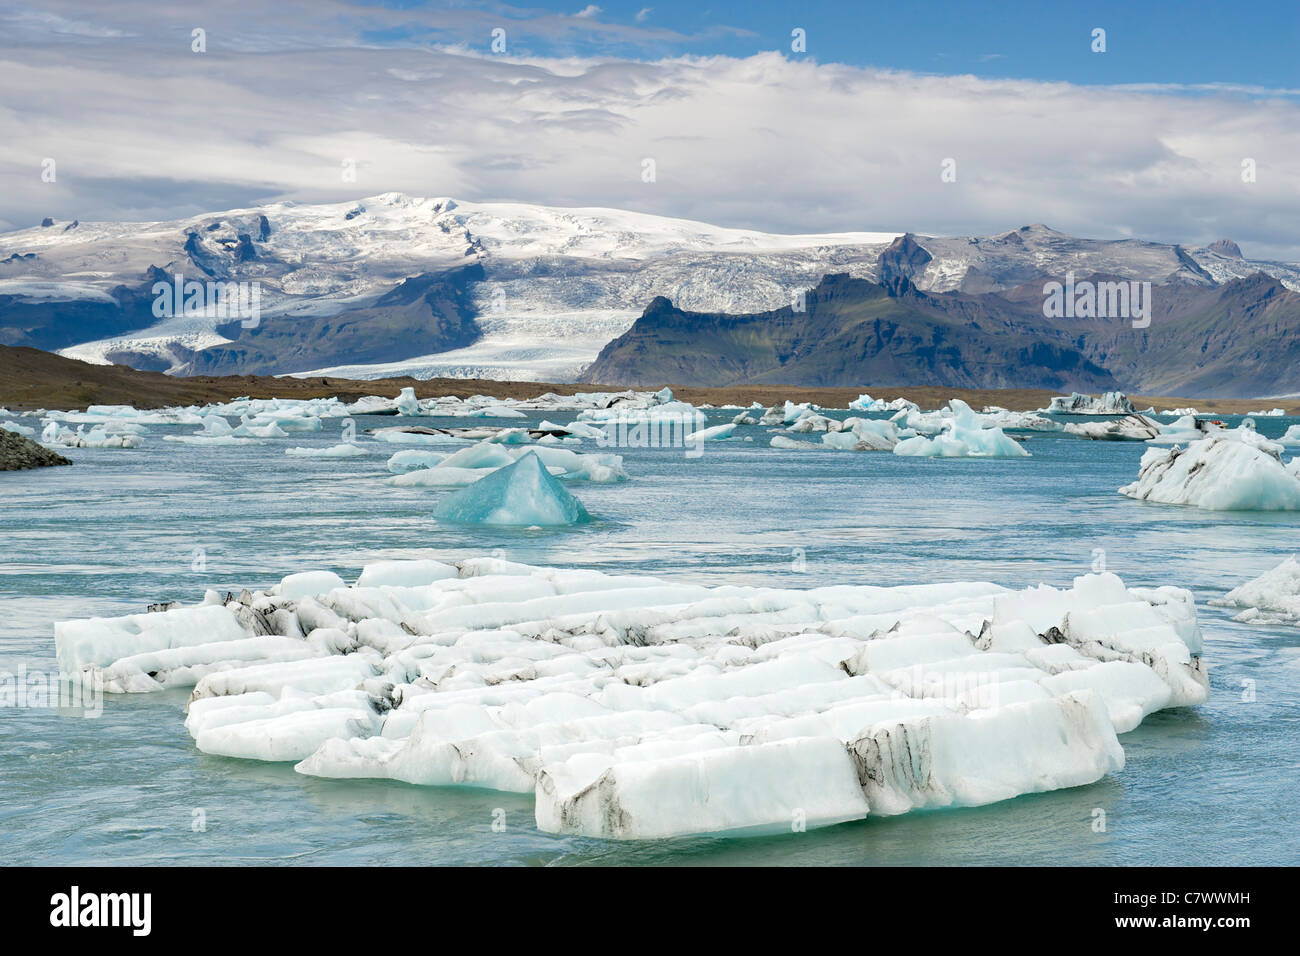 Icebergs flotando en el lago Jokullsarlon al pie del enorme glaciar Vatnajokull en el sureste de Islandia. Foto de stock